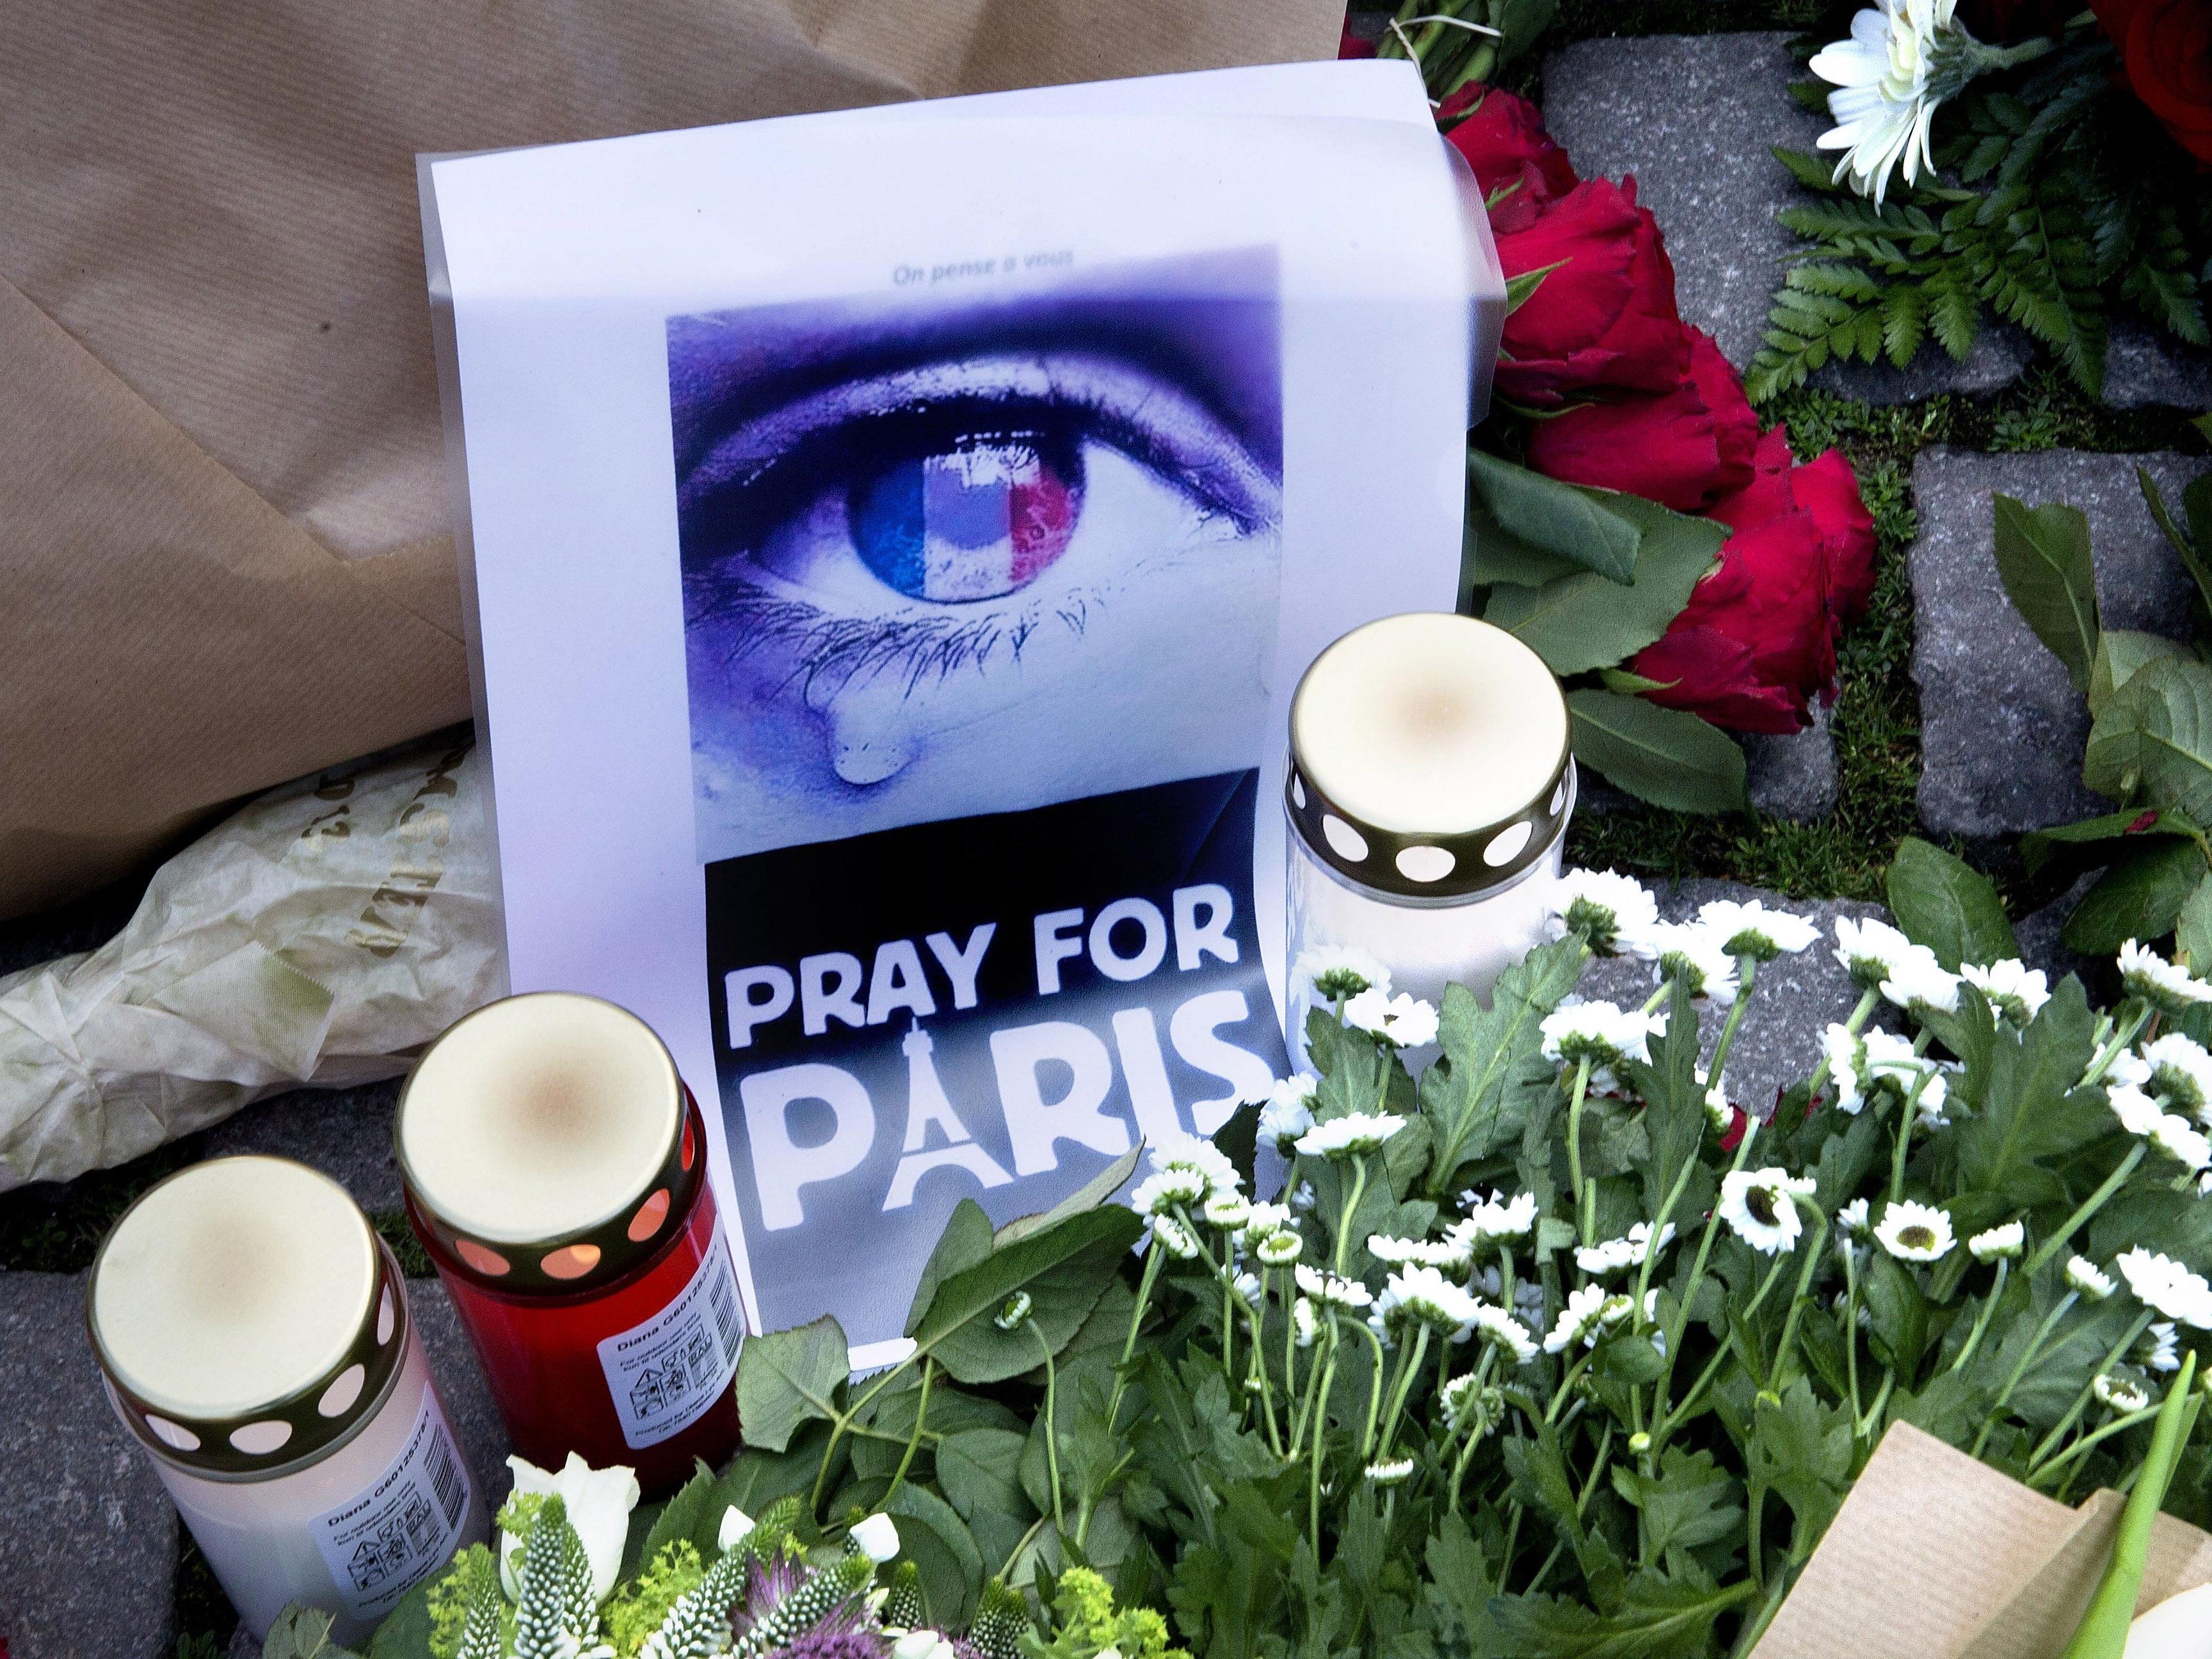 Paris-Terror - Was ist passiert und wer sind die Täter? Fragen und Antworten zu den Anschlägen von Paris.